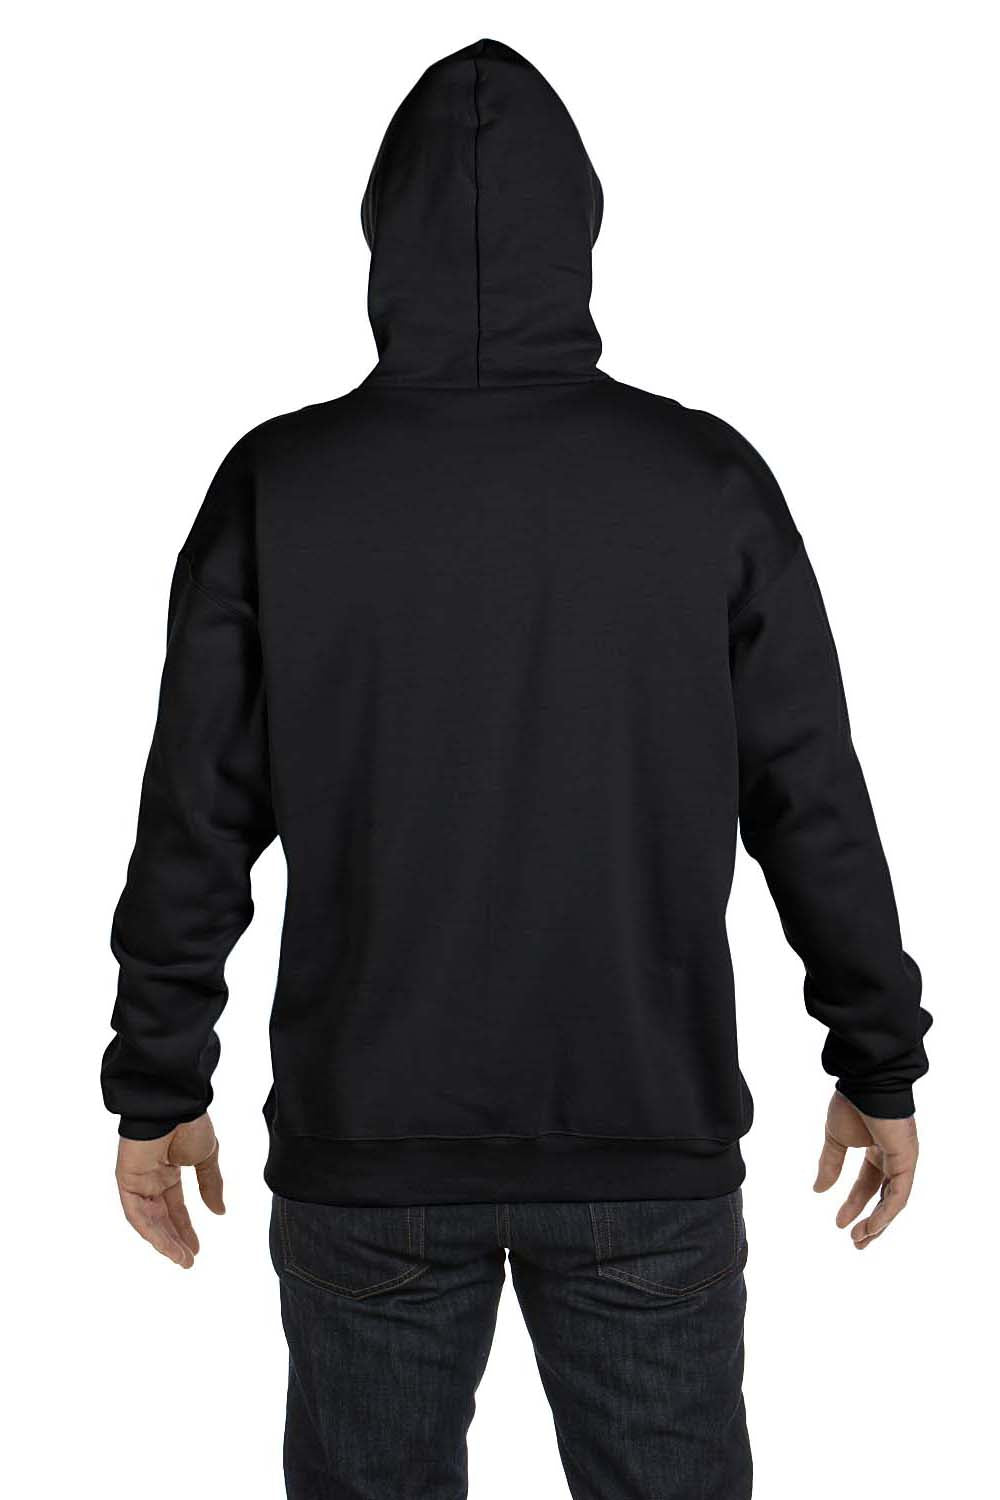 Hanes F170 Mens Ultimate Cotton PrintPro XP Hooded Sweatshirt Hoodie Black Back